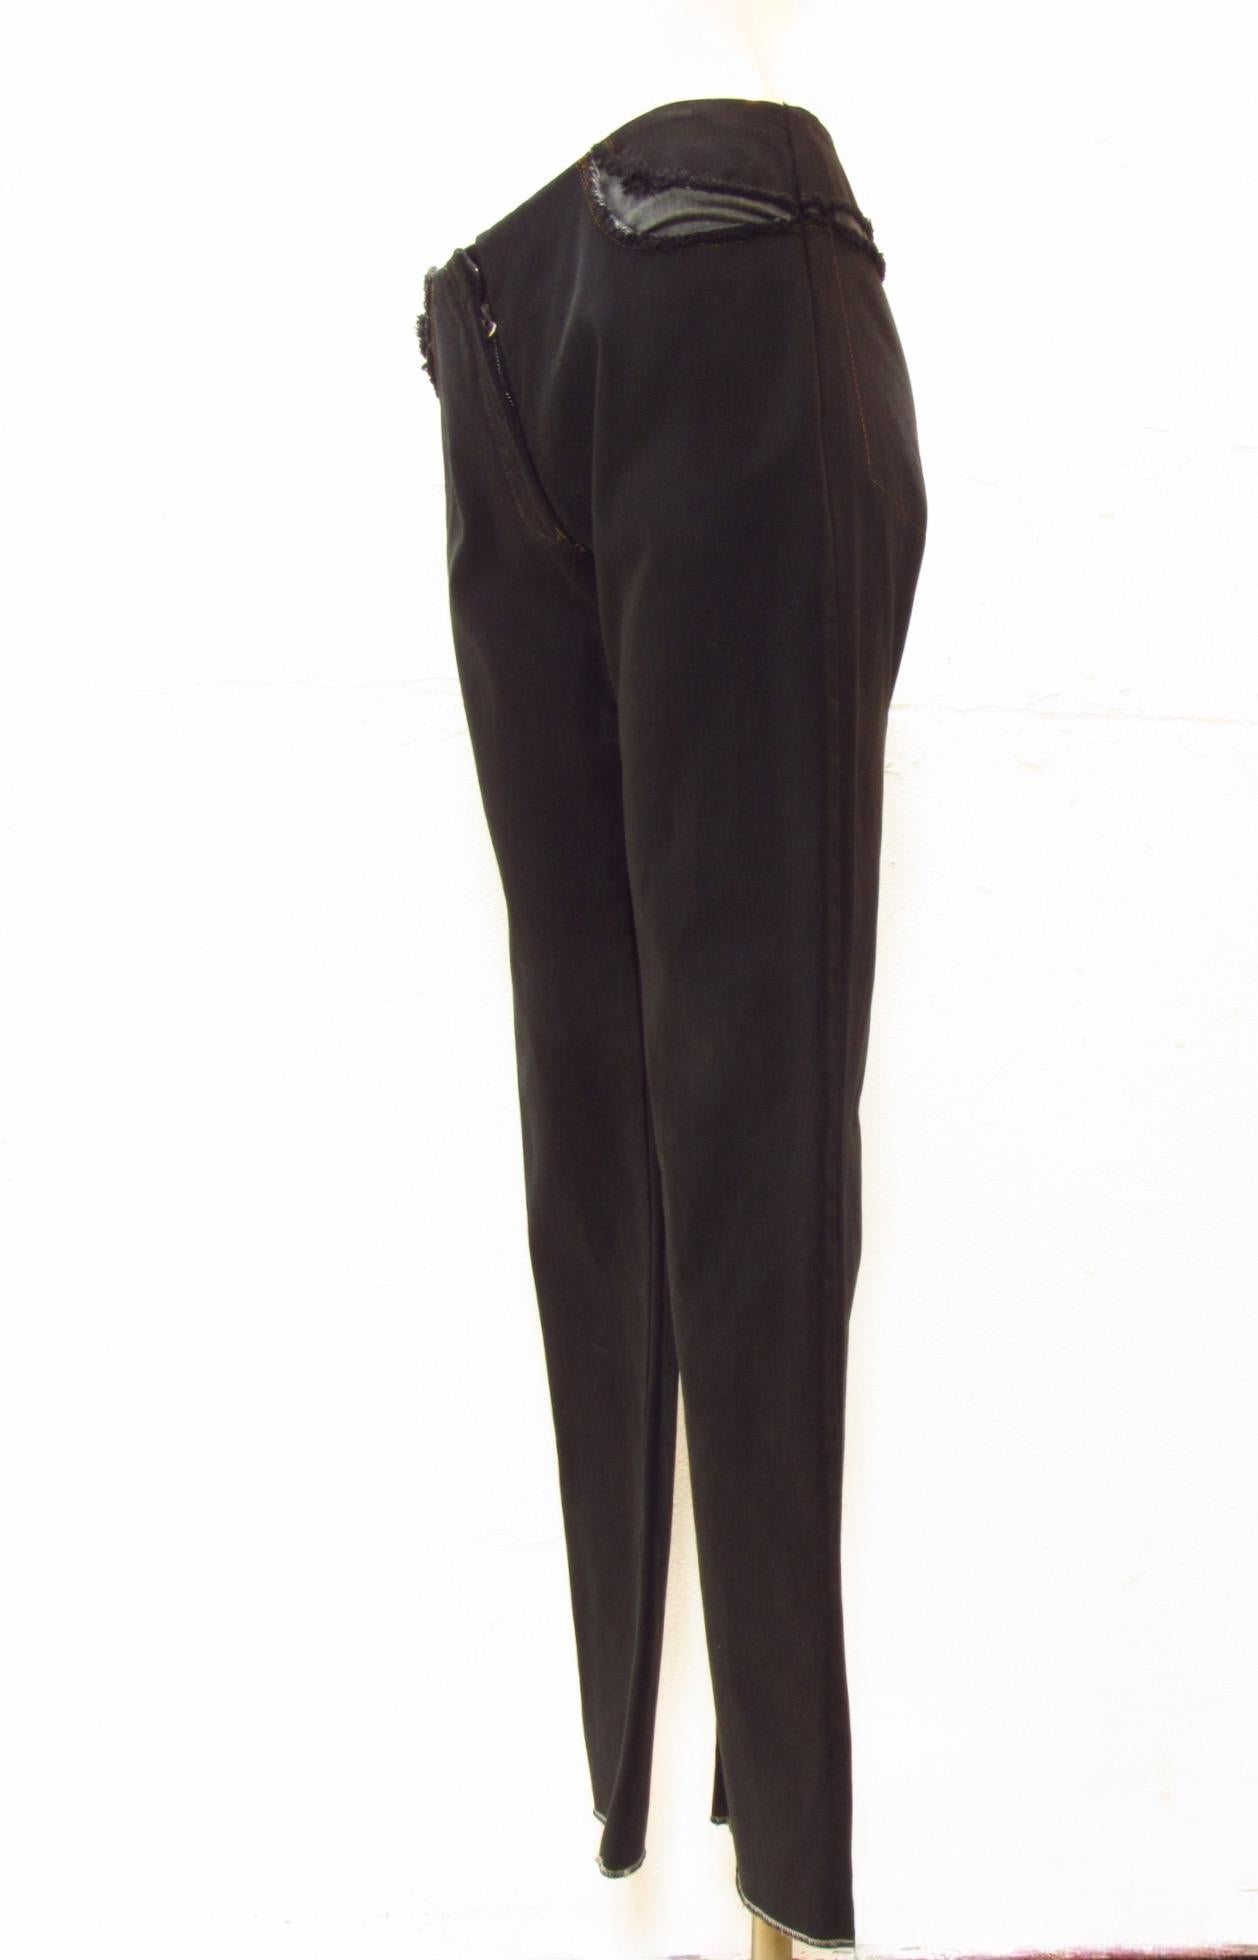 Die schwarze Hose von Maison Martin Margiela im Vintage-Stil ist ein Unikat mit freiliegenden Jeansnähten entlang der Taille an den Tascheneingriffen. Saubere Vorderseite mit einem kurzen Reißverschluss vorne. 